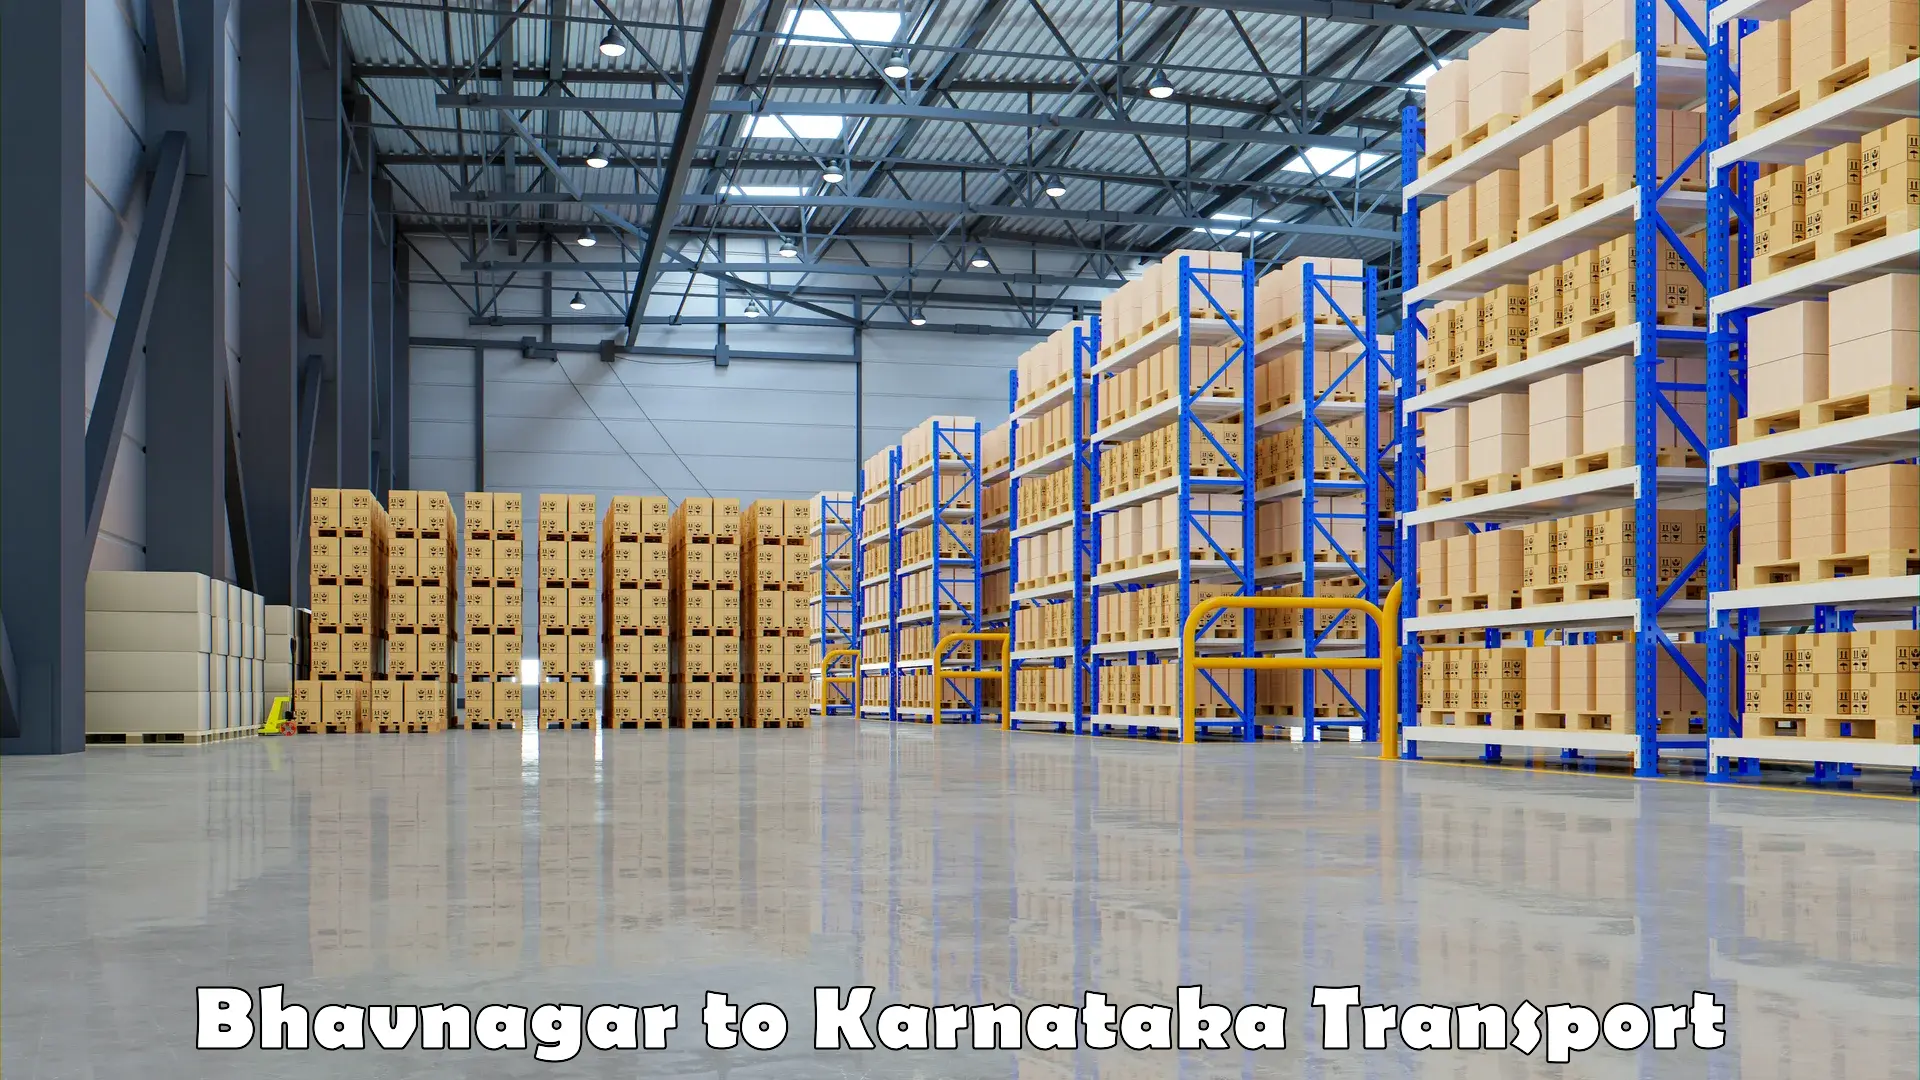 Delivery service Bhavnagar to Kodagu